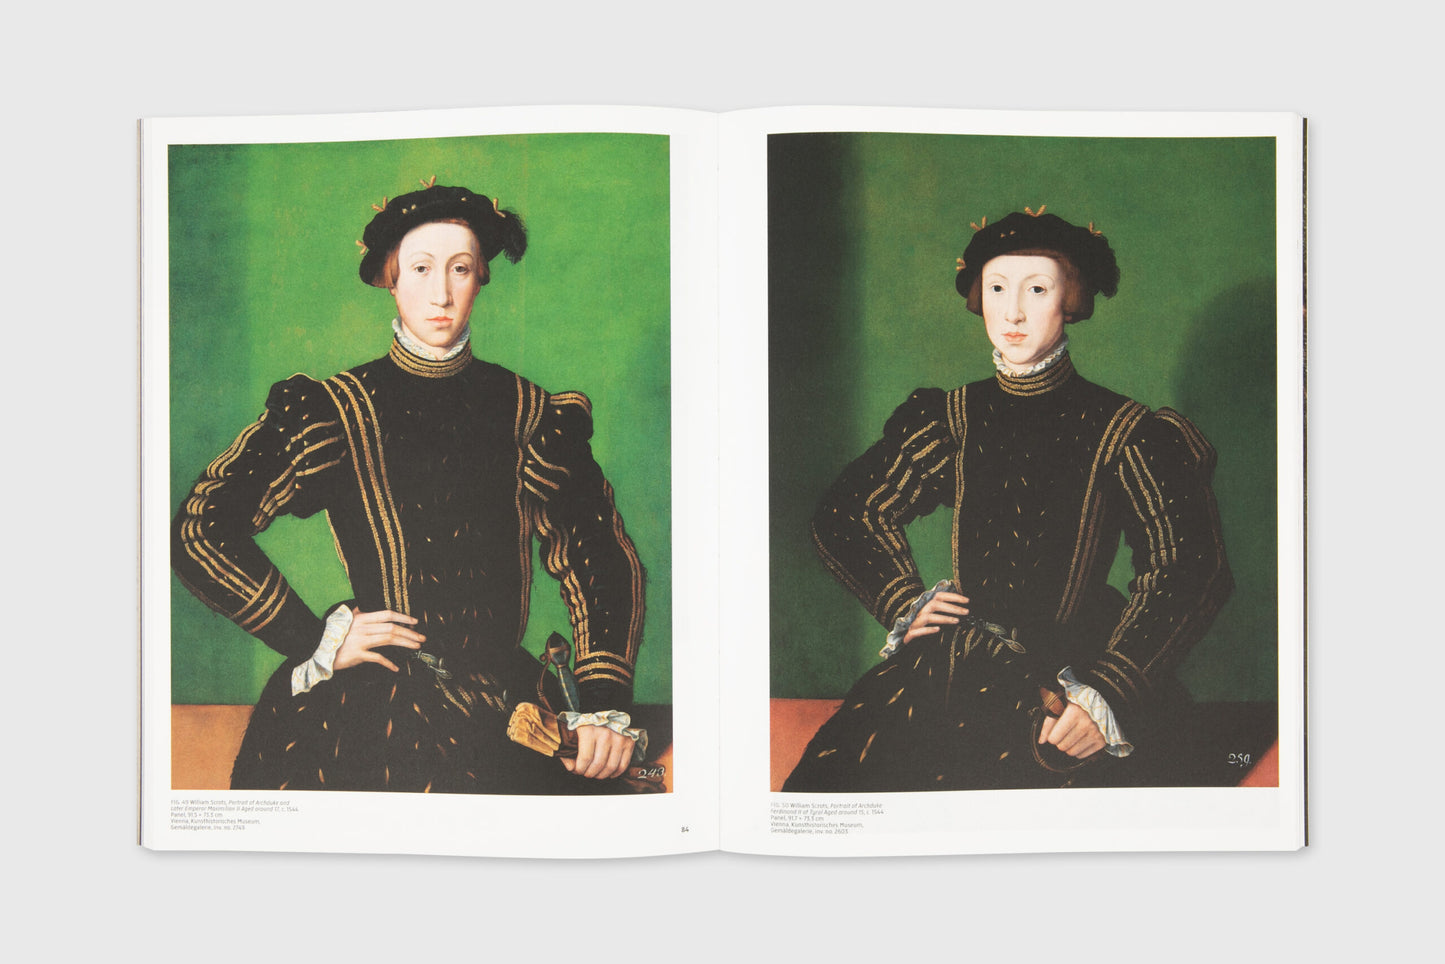 Remember Me: Renaissance Portraits